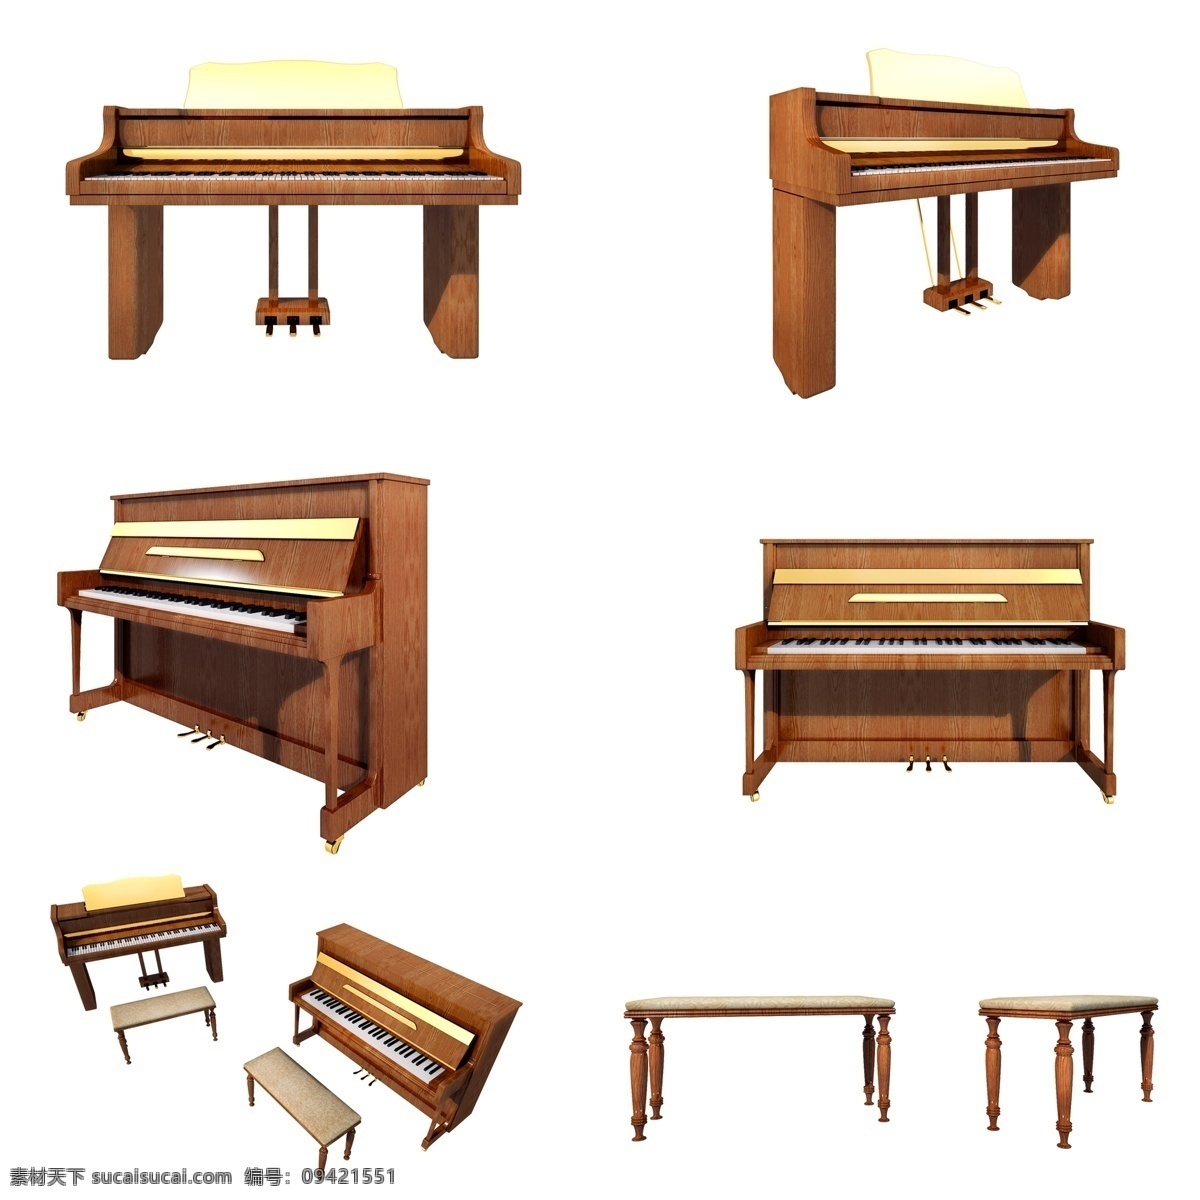 质感 古董 钢琴 套 图 木质 古董钢琴 精致 镀金 仿真 3d 立体 创意 套图 png图